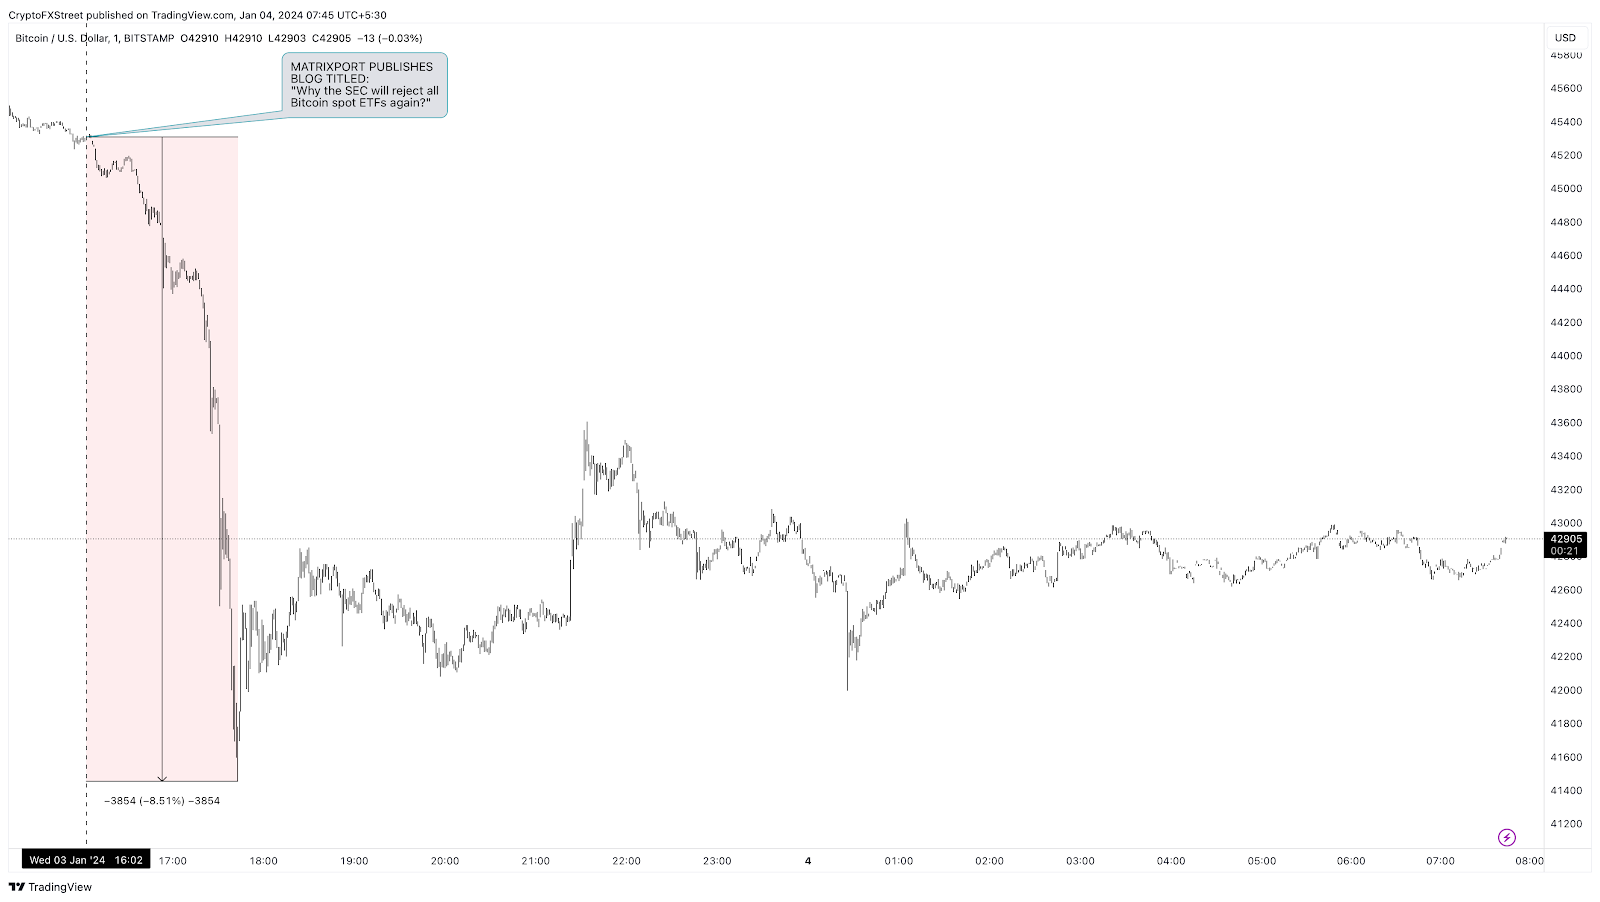 BTC/USD 1-minute chart